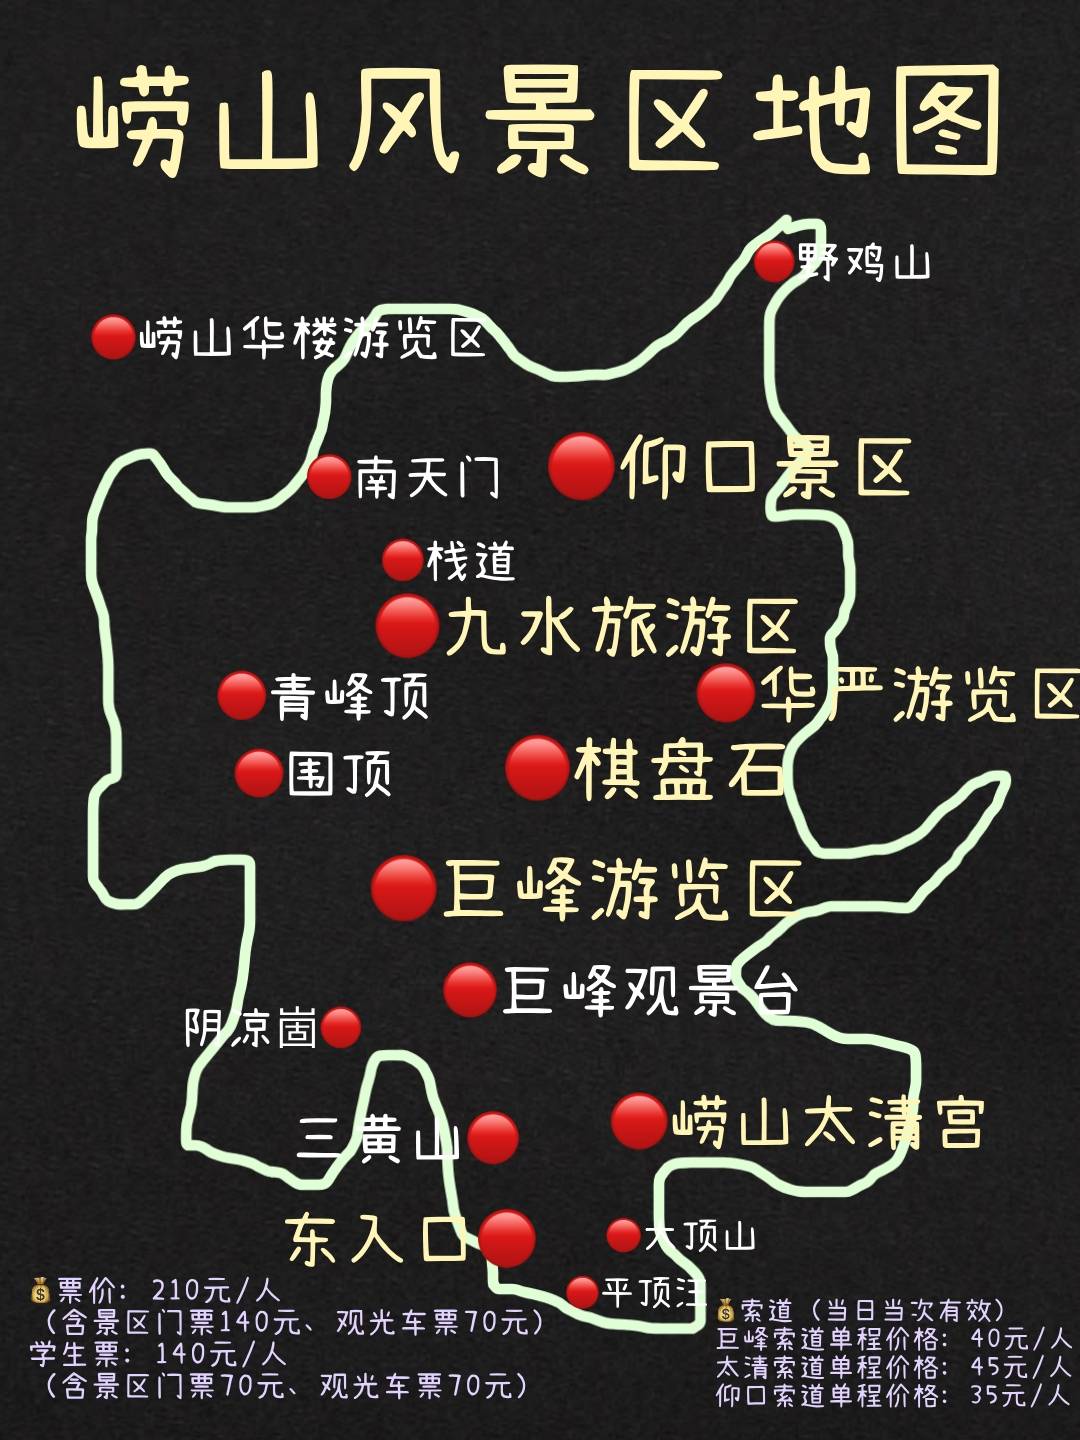 青岛旅游行李寄存攻略,青岛地铁景点地图门票及青岛美食